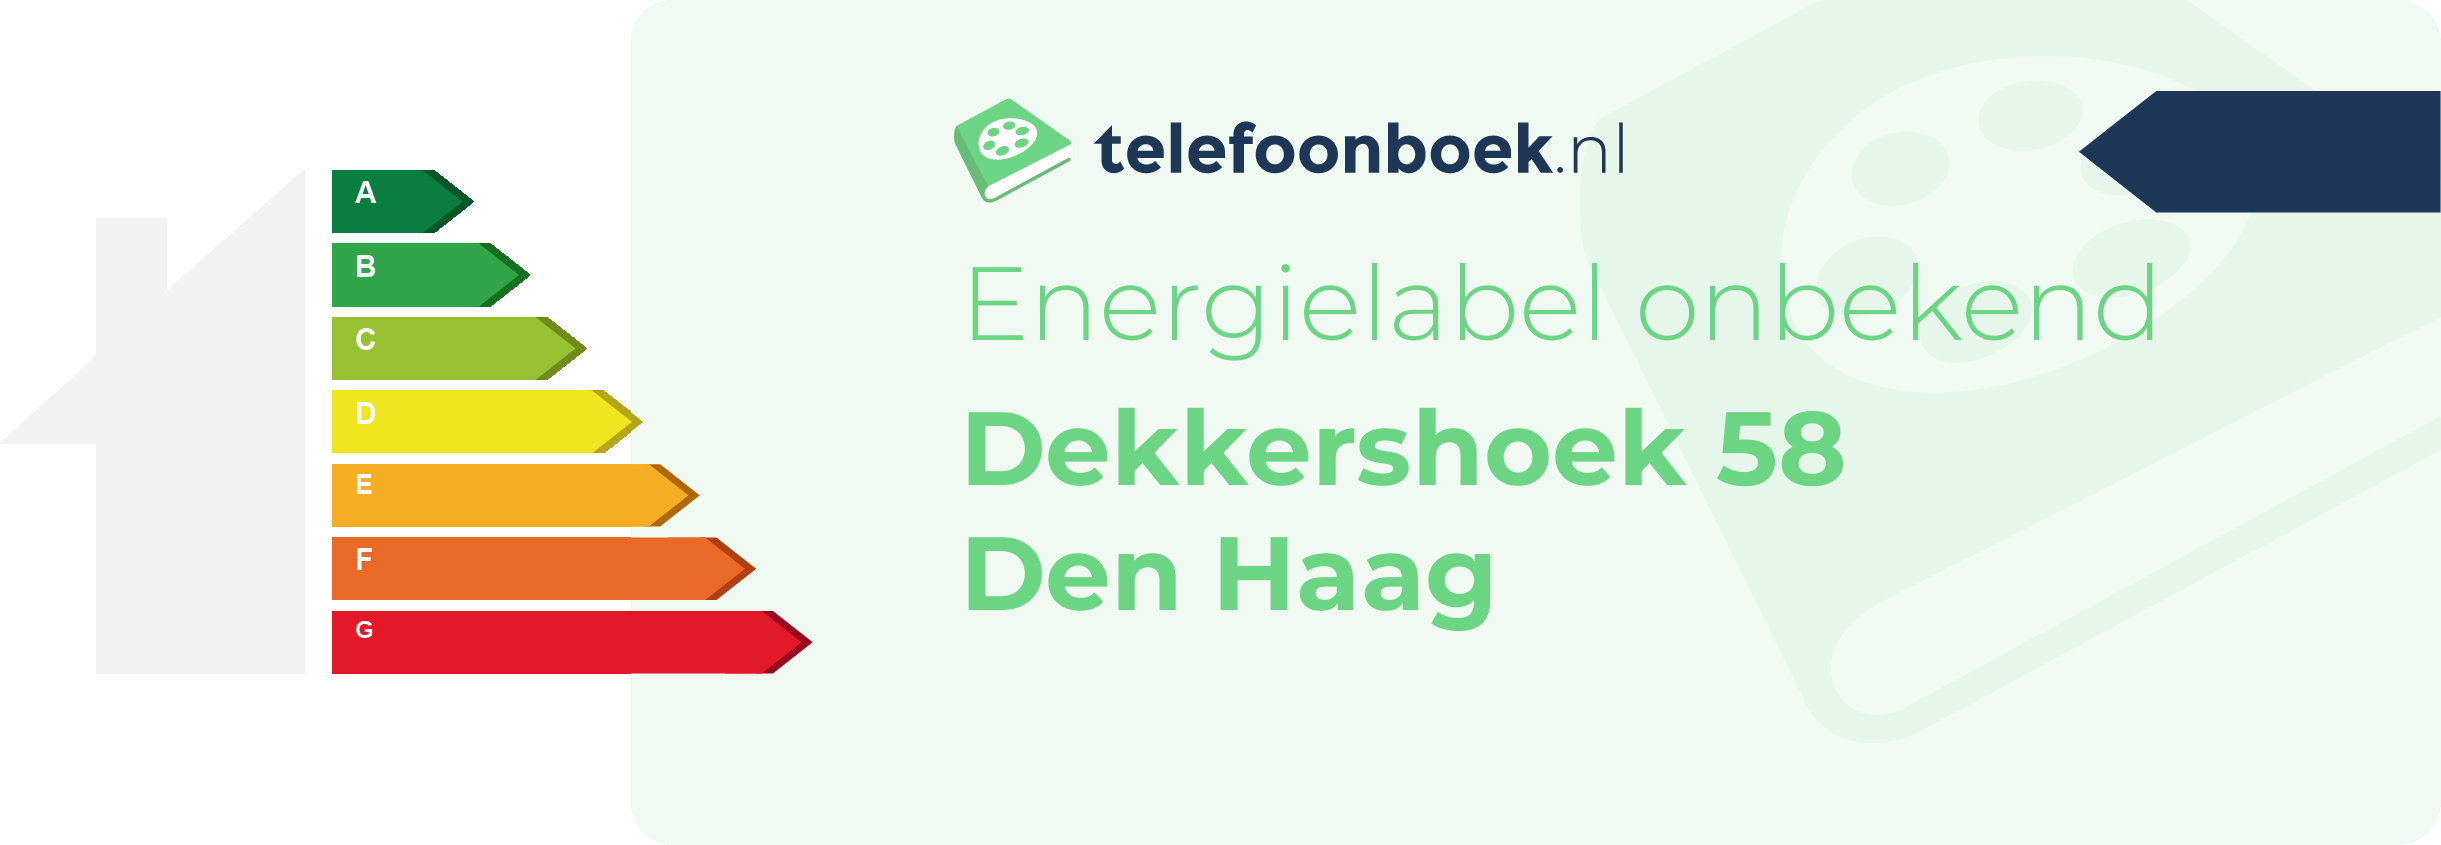 Energielabel Dekkershoek 58 Den Haag